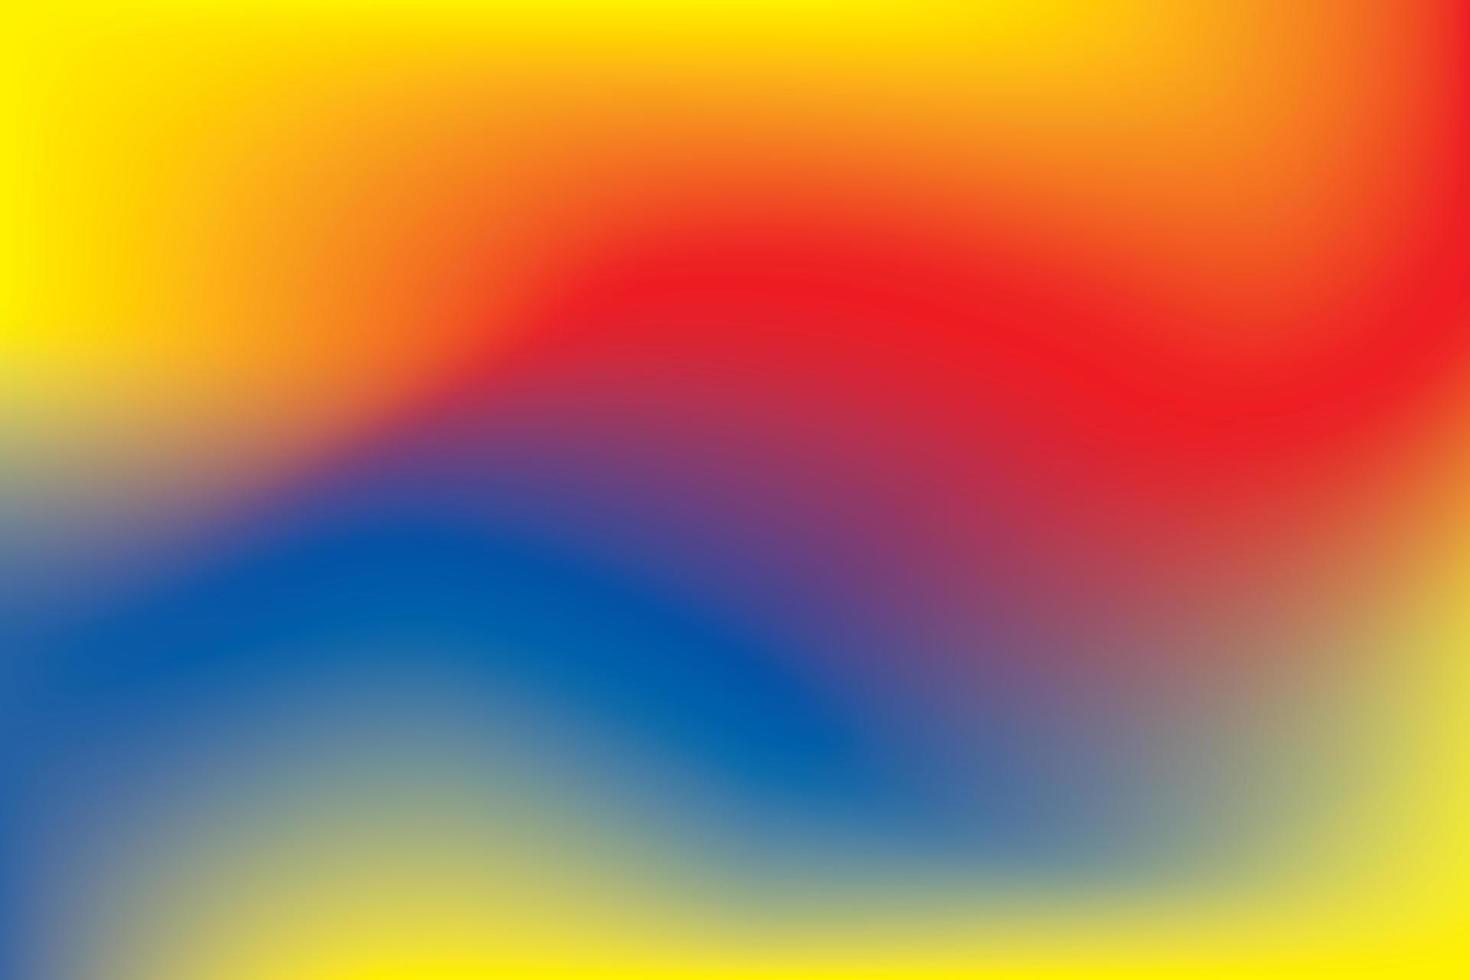 abstrakt gradient bakgrund. primära färger, blått, rött och gult. vektor illustration.